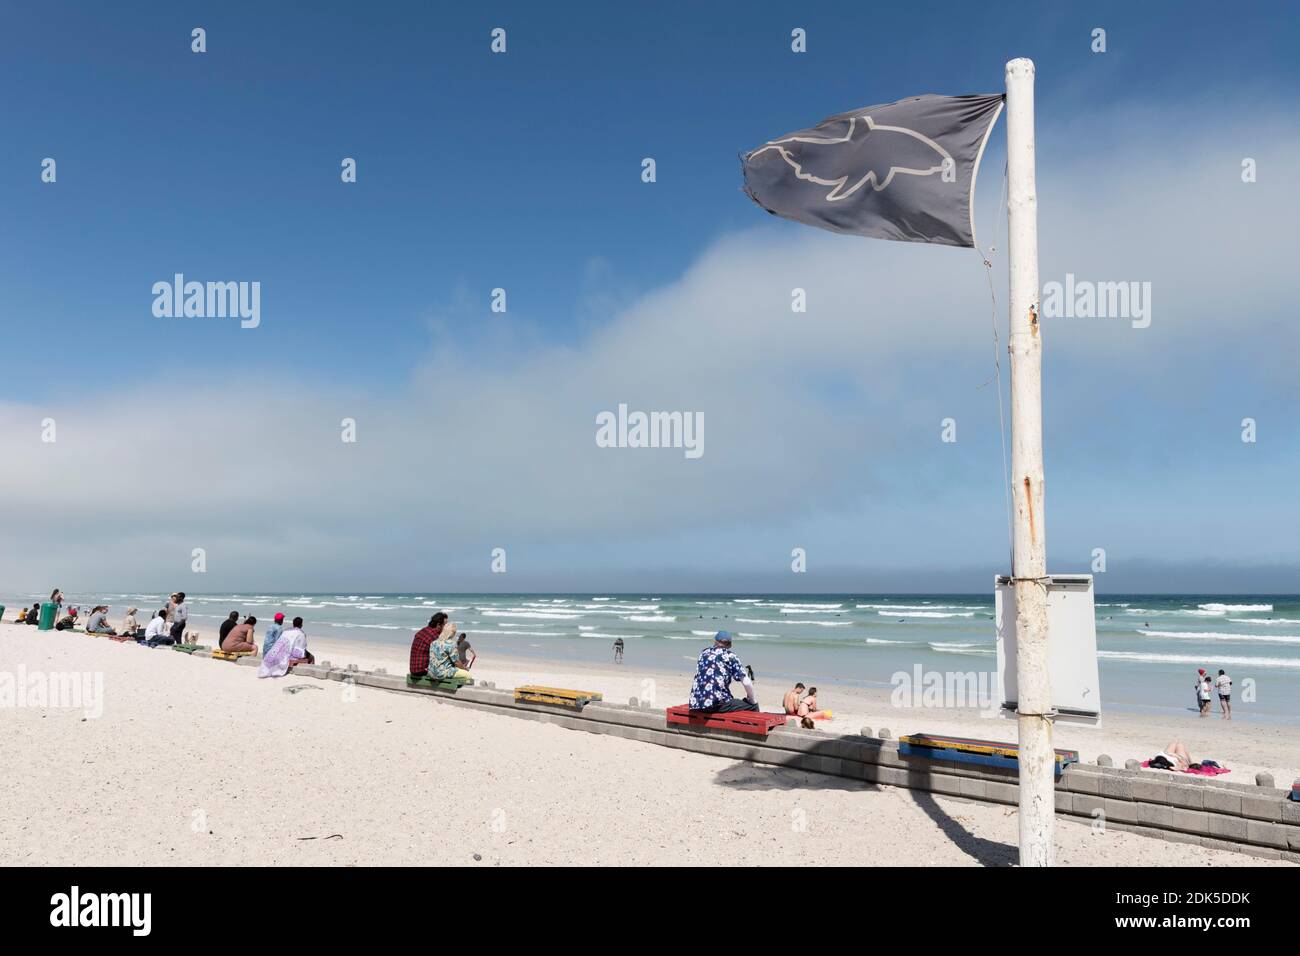 Una bandiera nera di allarme squalo vola sulla spiaggia di Muizenberg, Città del Capo, Sud Africa. La bandiera nera indica che le condizioni di avvistamento degli squali sono scarse. Foto Stock